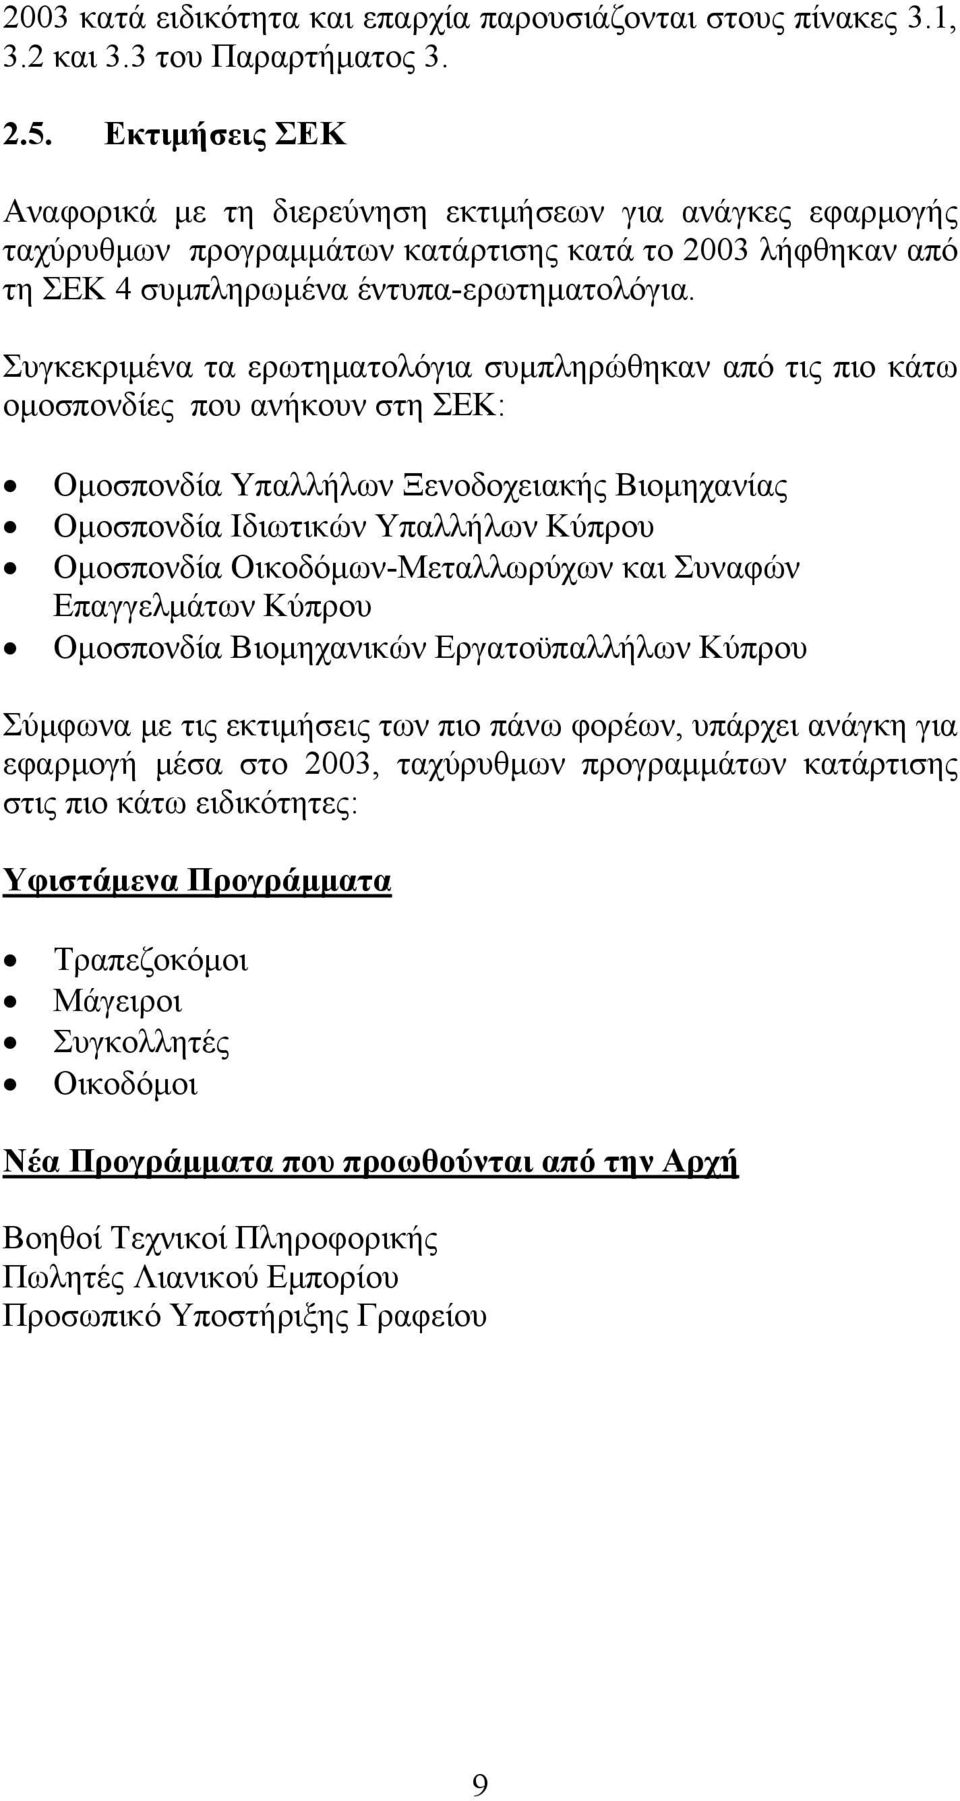 Συγκεκριμένα τα ερωτηματολόγια συμπληρώθηκαν από τις πιο κάτω ομοσπονδίες που ανήκουν στη ΣΕΚ: Ομοσπονδία Υπαλλήλων Ξενοδοχειακής Βιομηχανίας Ομοσπονδία Ιδιωτικών Υπαλλήλων Κύπρου Ομοσπονδία